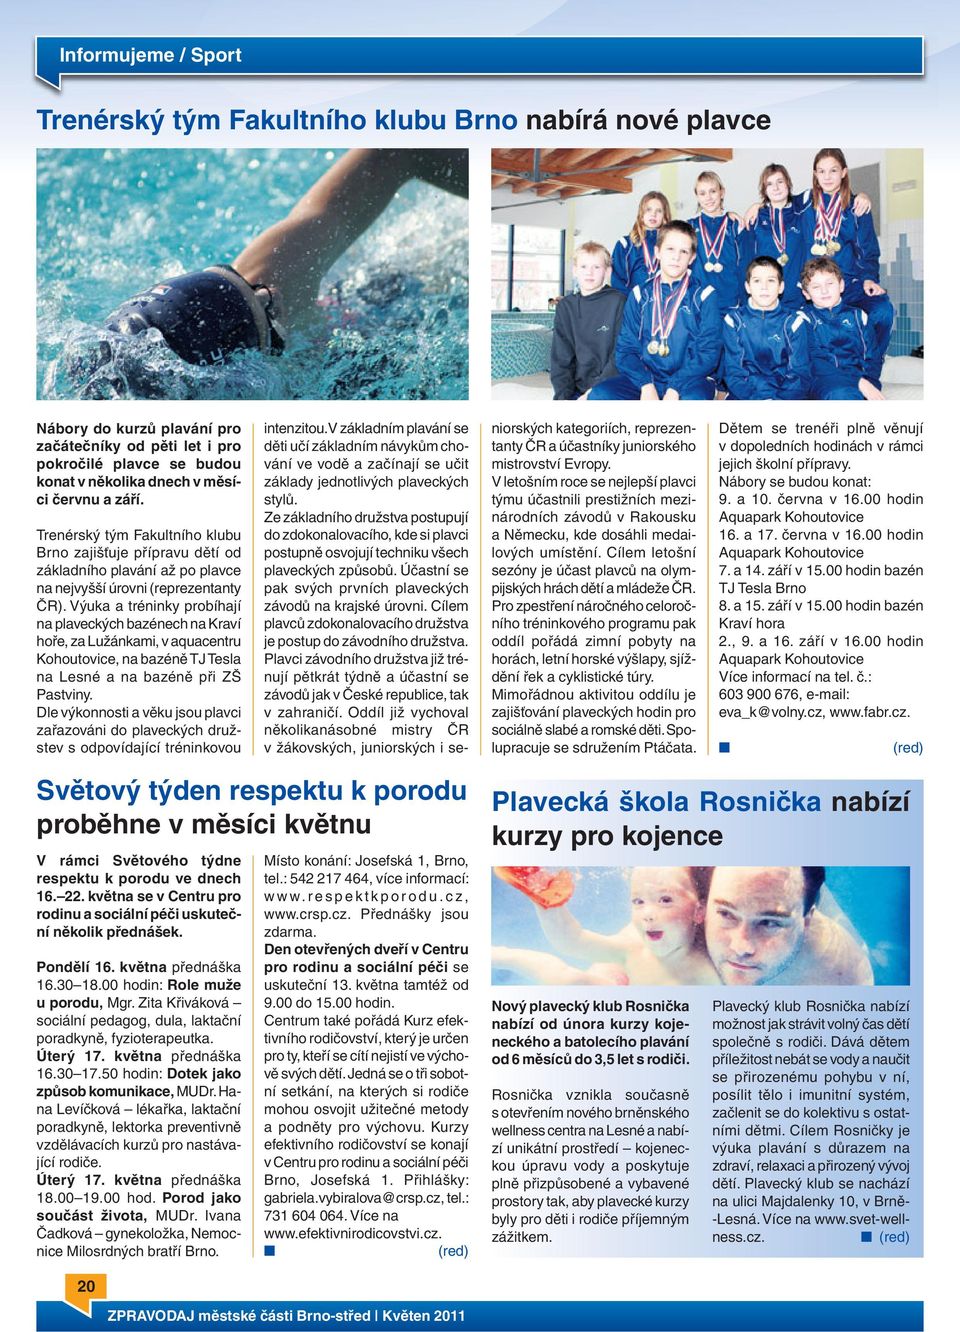 Výuka a tréninky probíhají na plaveckých bazénech na Kraví hoře, za Lužánkami, v aquacentru Kohoutovice, na bazéně TJ Tesla na Lesné a na bazéně při ZŠ Pastviny.